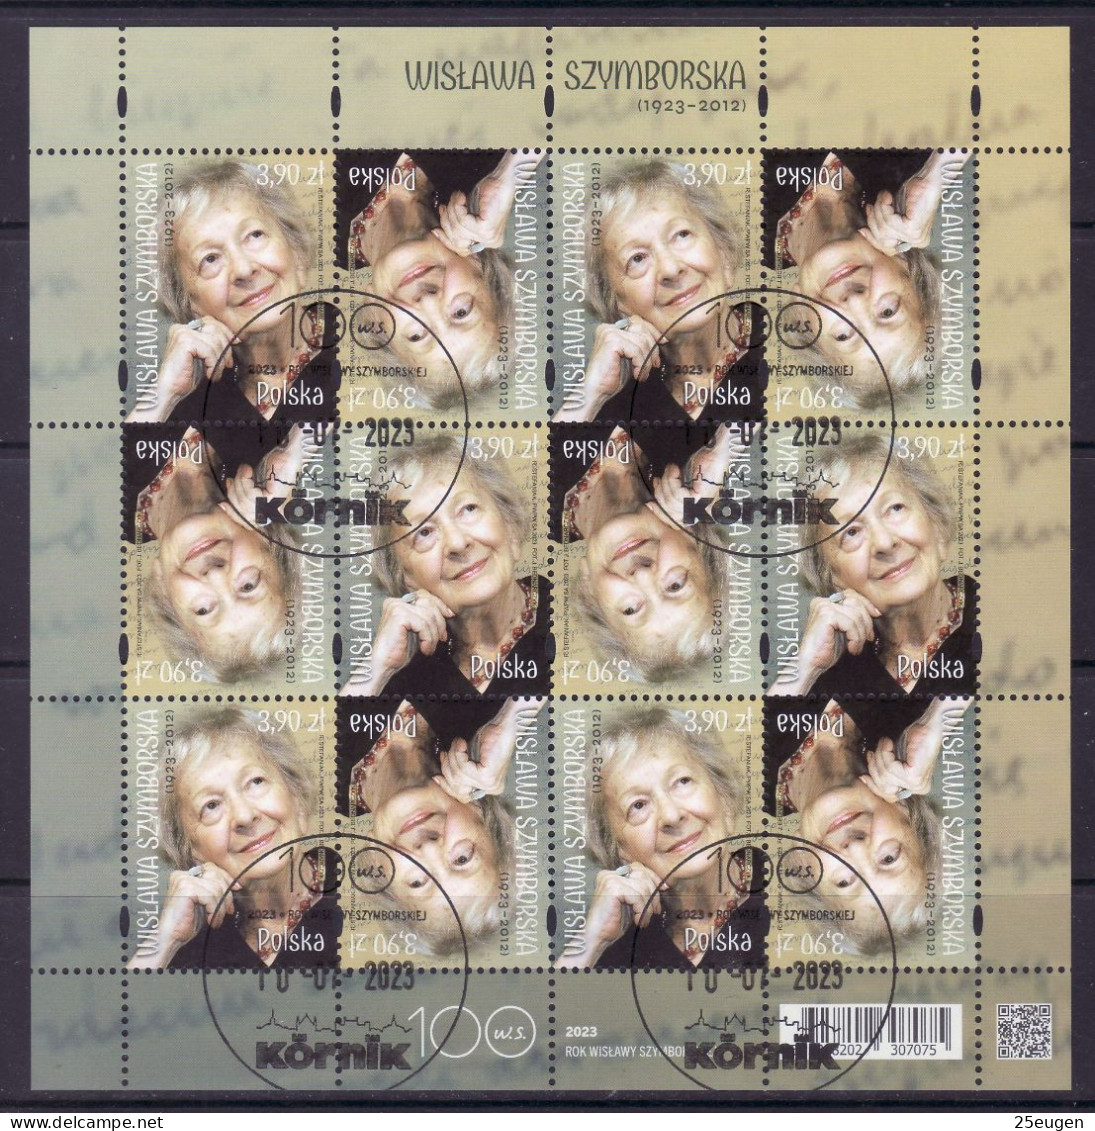 POLAND 2023  Wisława Szymborska  MS  USED - Used Stamps